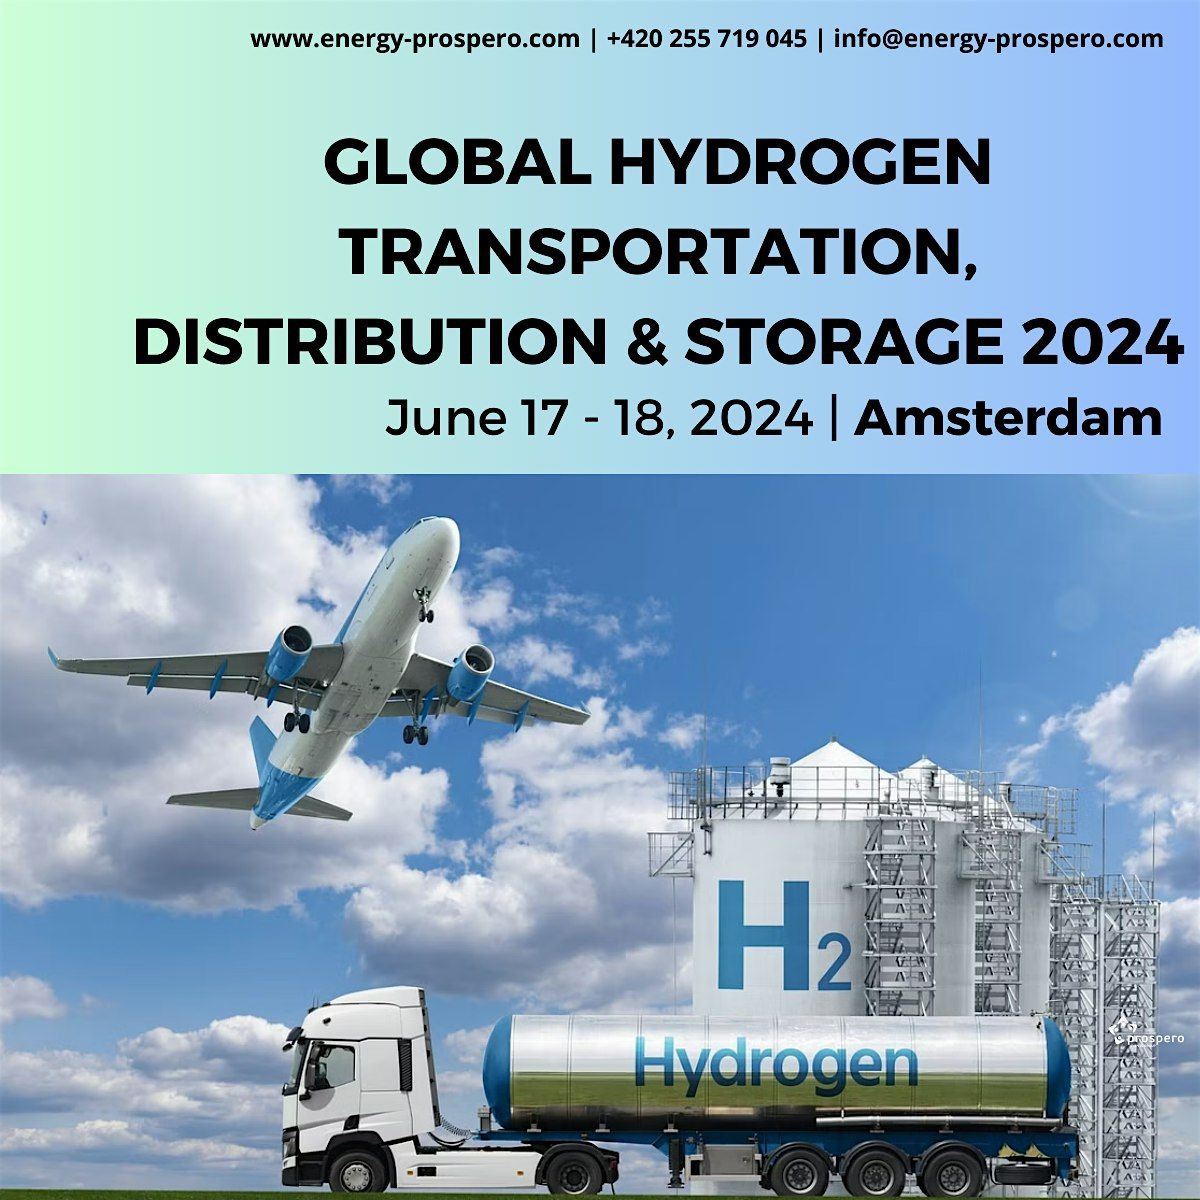 Global Hydrogen Transportation, Distribution & Storage Conference